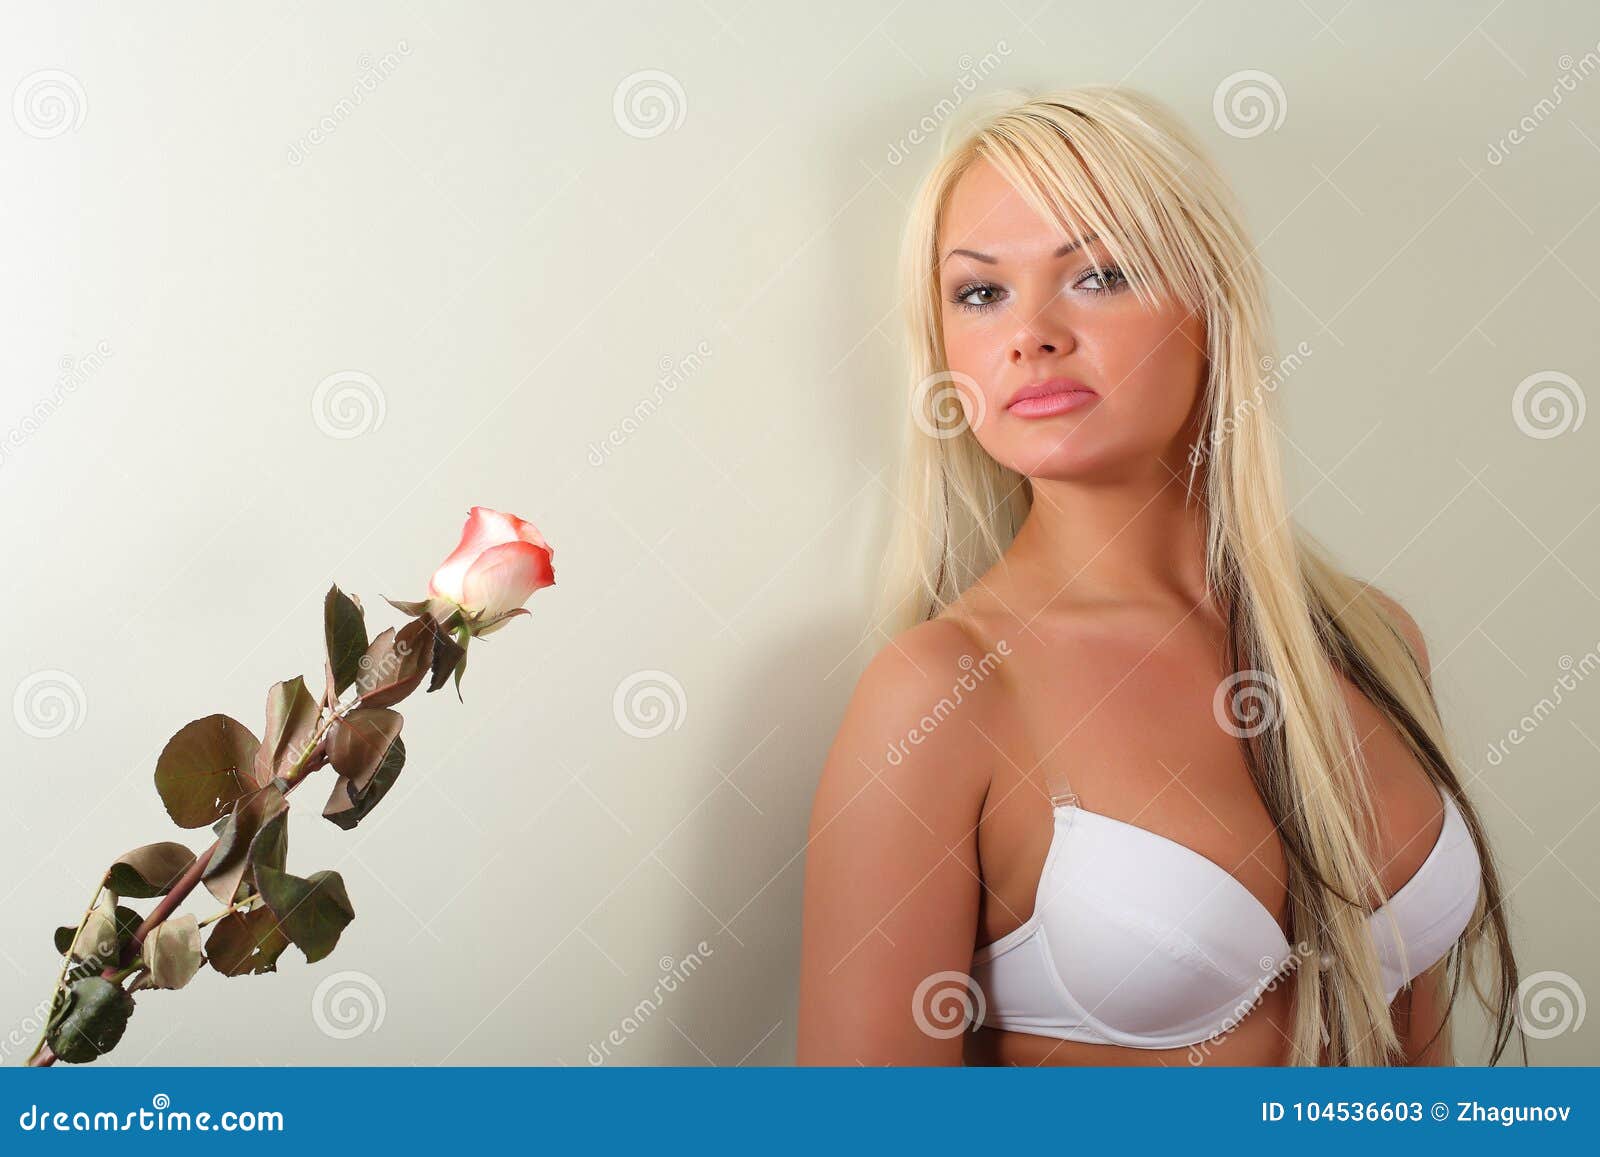 Blondine Mit Den Großen Brüsten Im Weißen BH Stockbild - Bild von freude,  schauen: 104536603